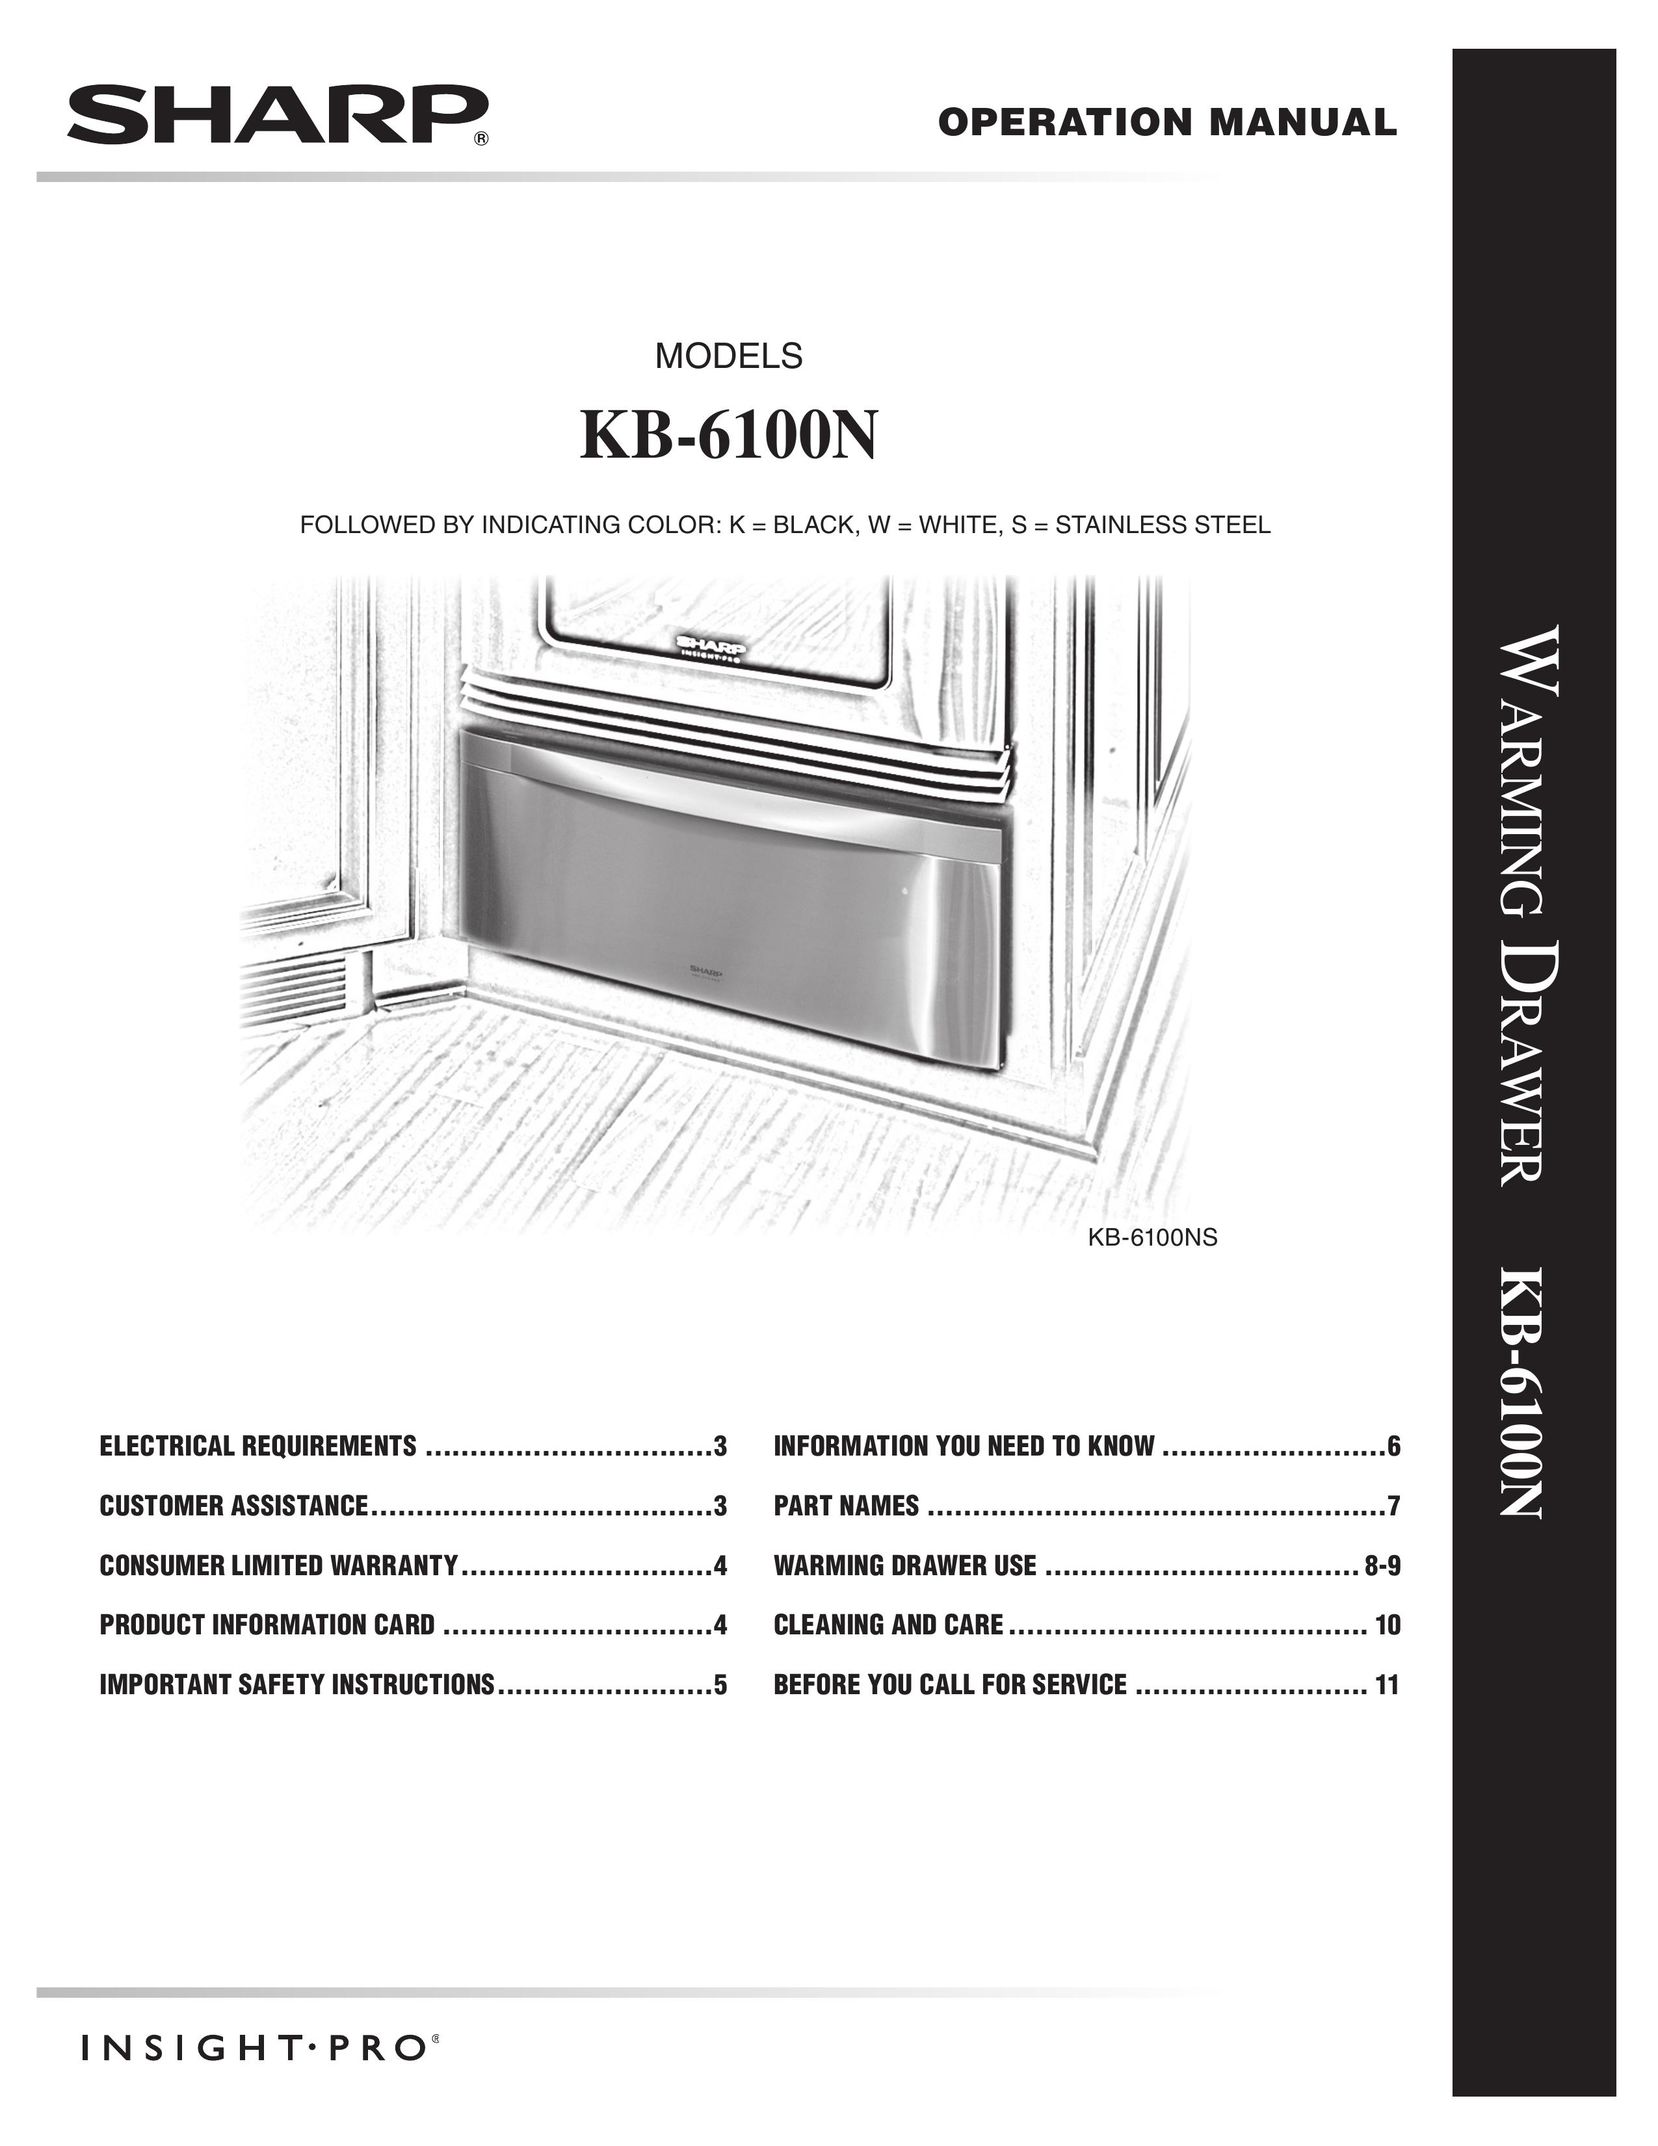 Sharp KB-6100NW Food Warmer User Manual